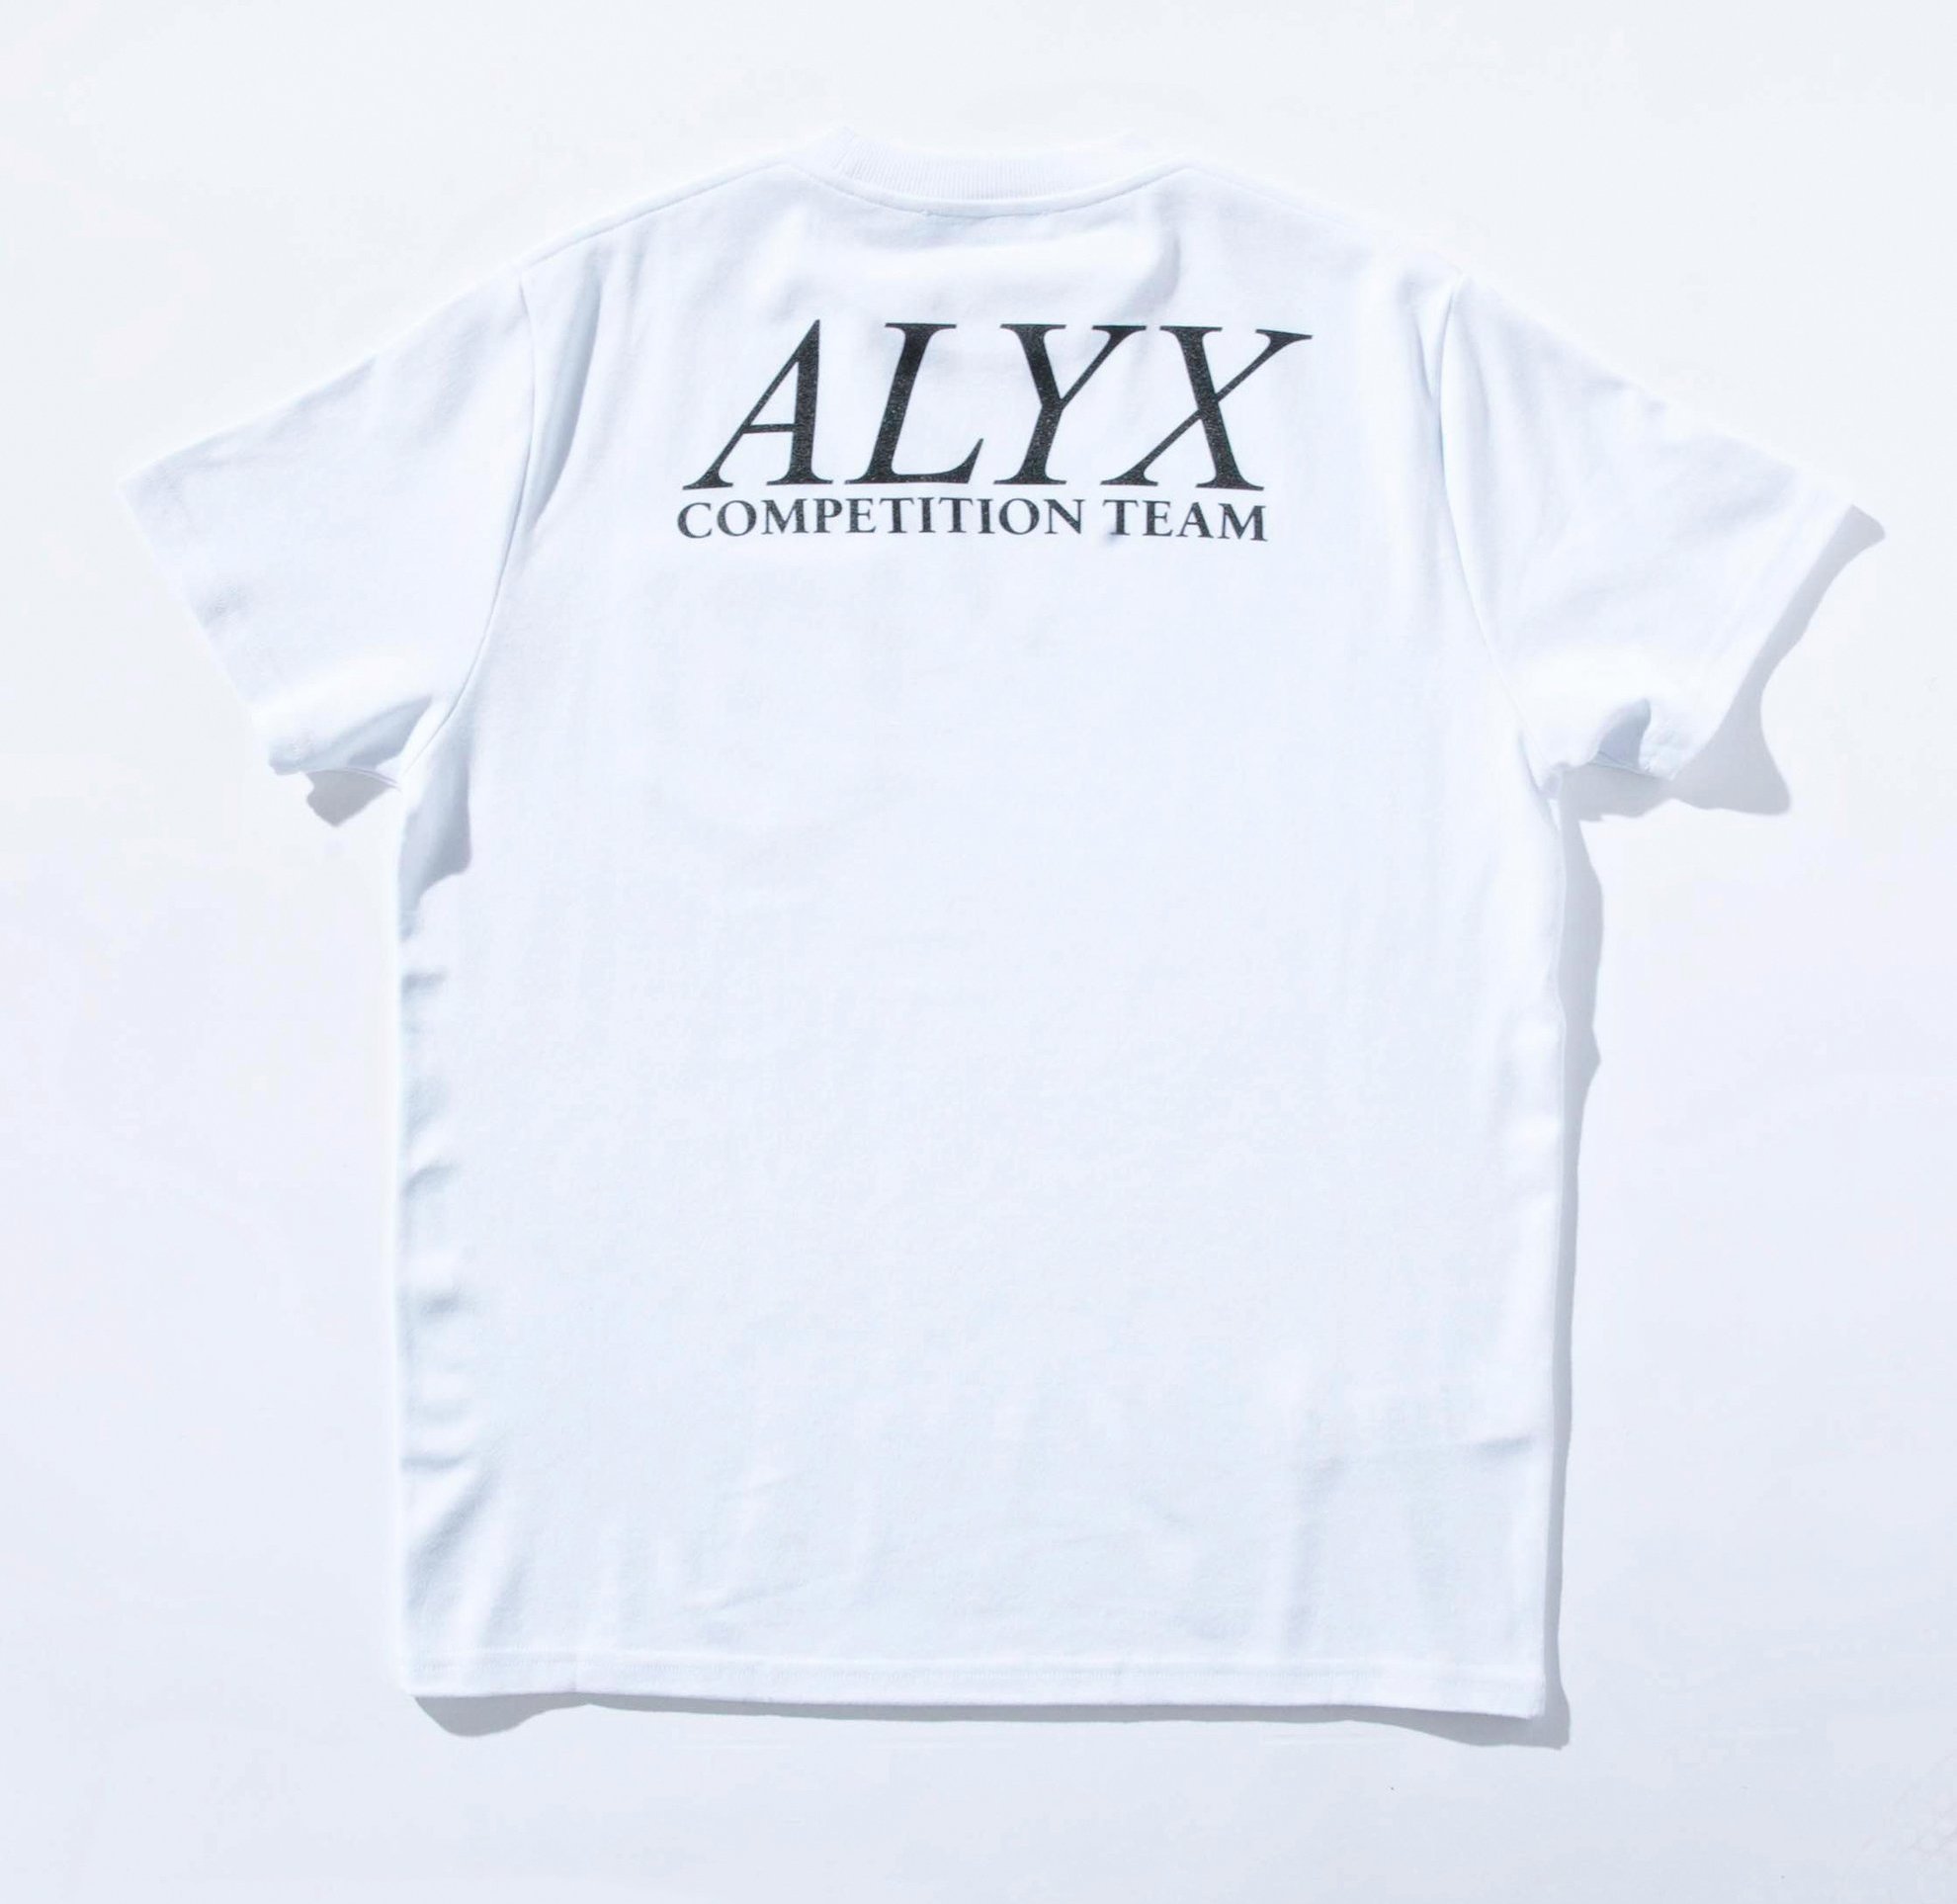 Alyx Skate Team T shirt